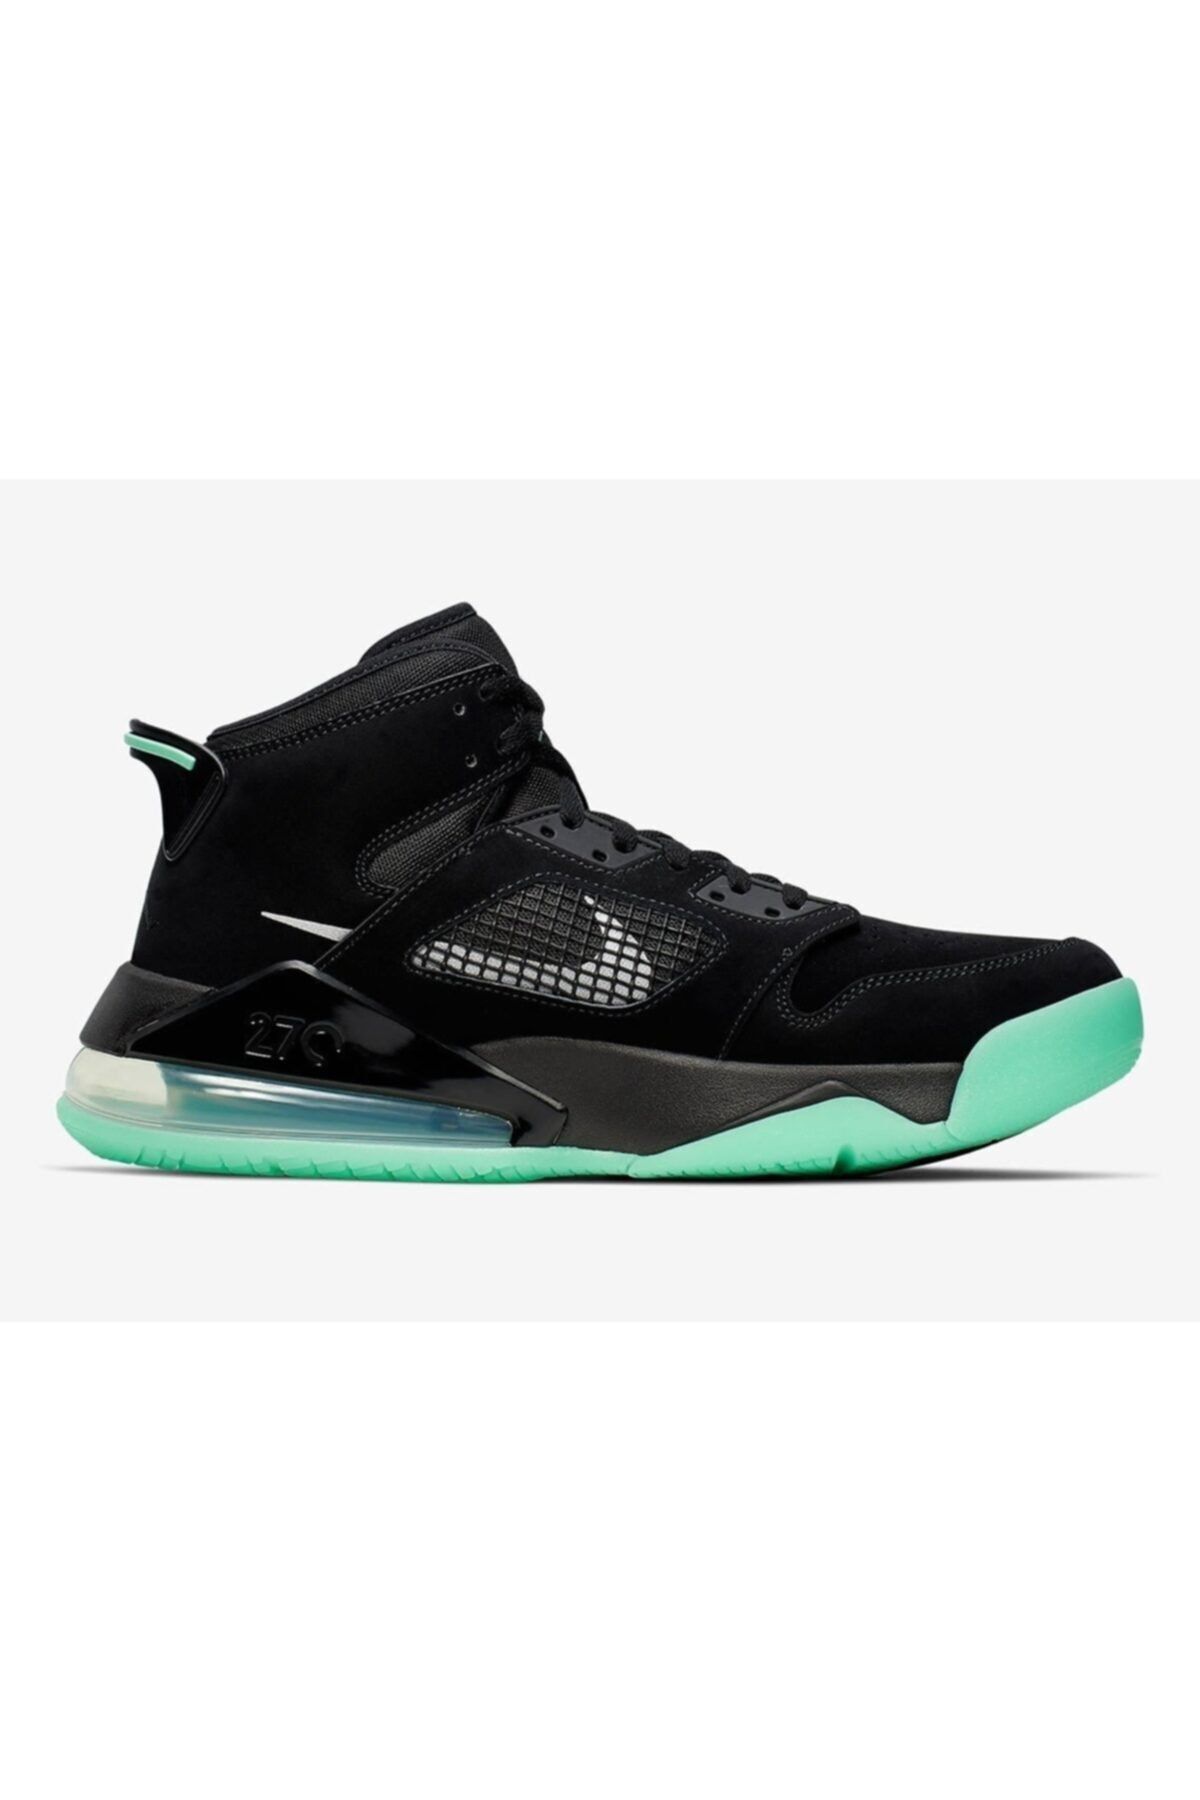 Nike Jordan Mars 270 Black Glow Erkek Spor Ayakkabı Cd7070-003 PRA-2249877-947481